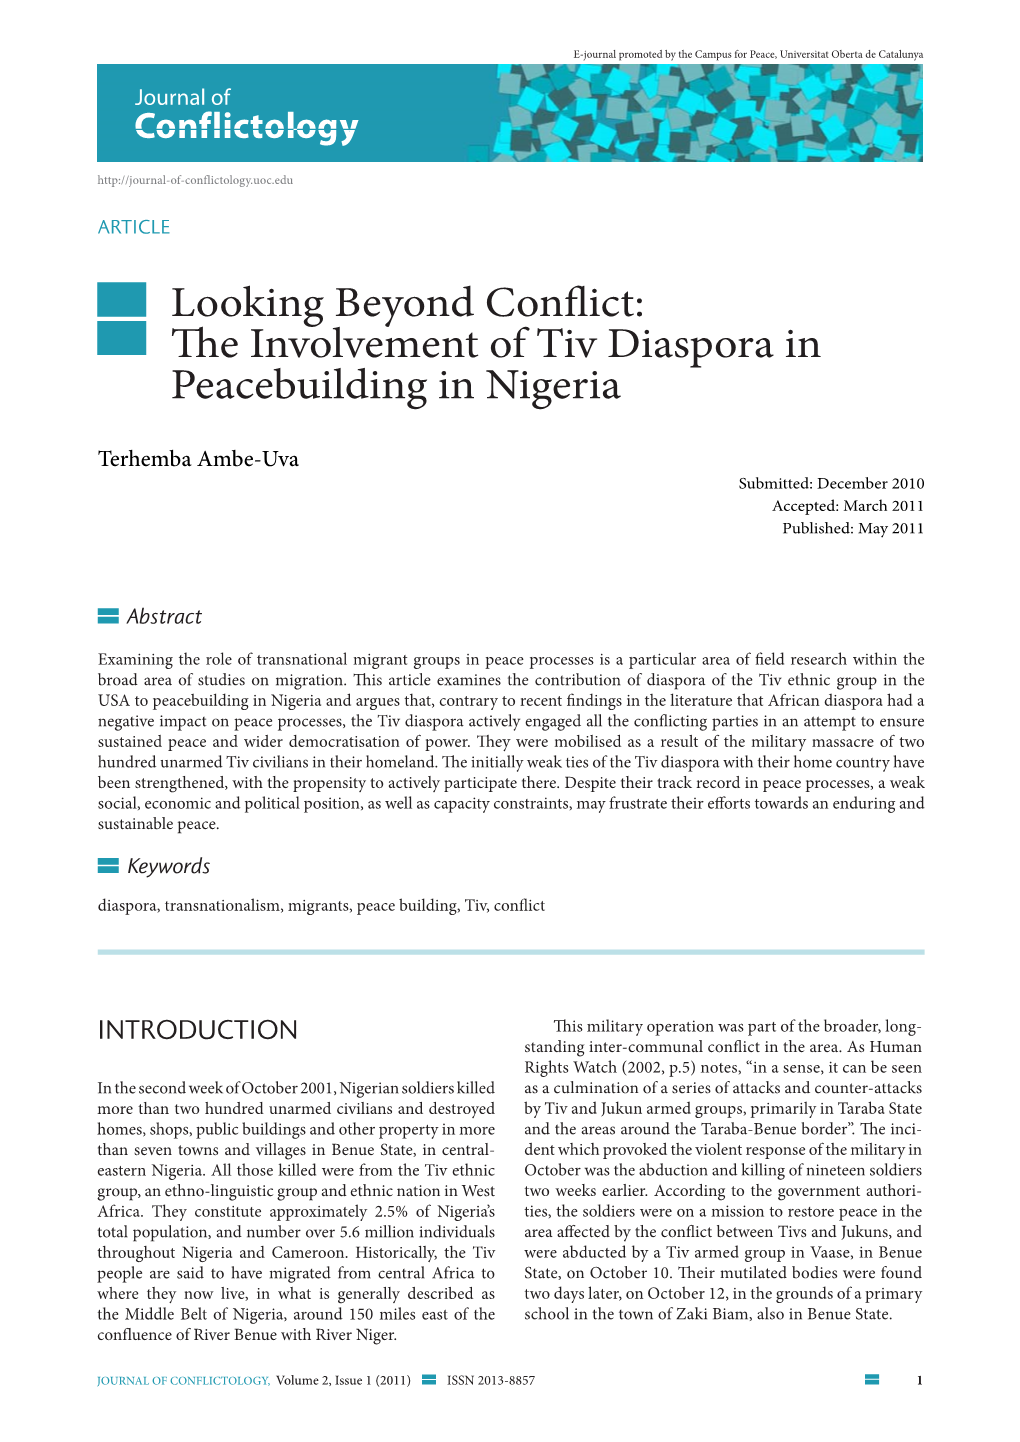 The Involvement of Tiv Diaspora in Peacebuilding in Nigeria